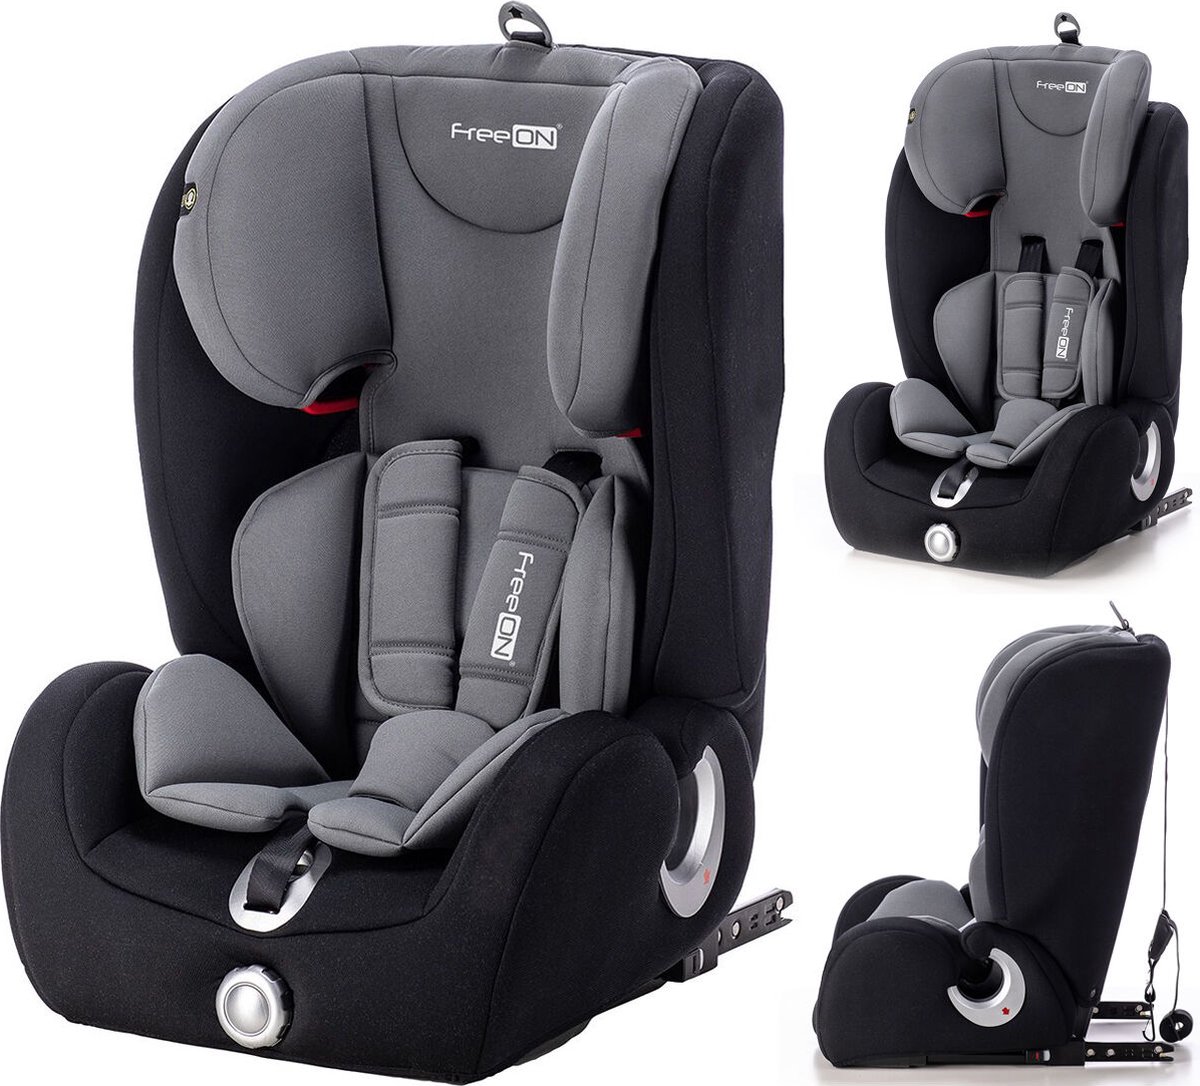 FreeON autostoel SimpleFix met isoFix Grey (9-36kg) - Groep 1-2-3 autostoel voor kinderen van 9 maanden tot 12 jaar